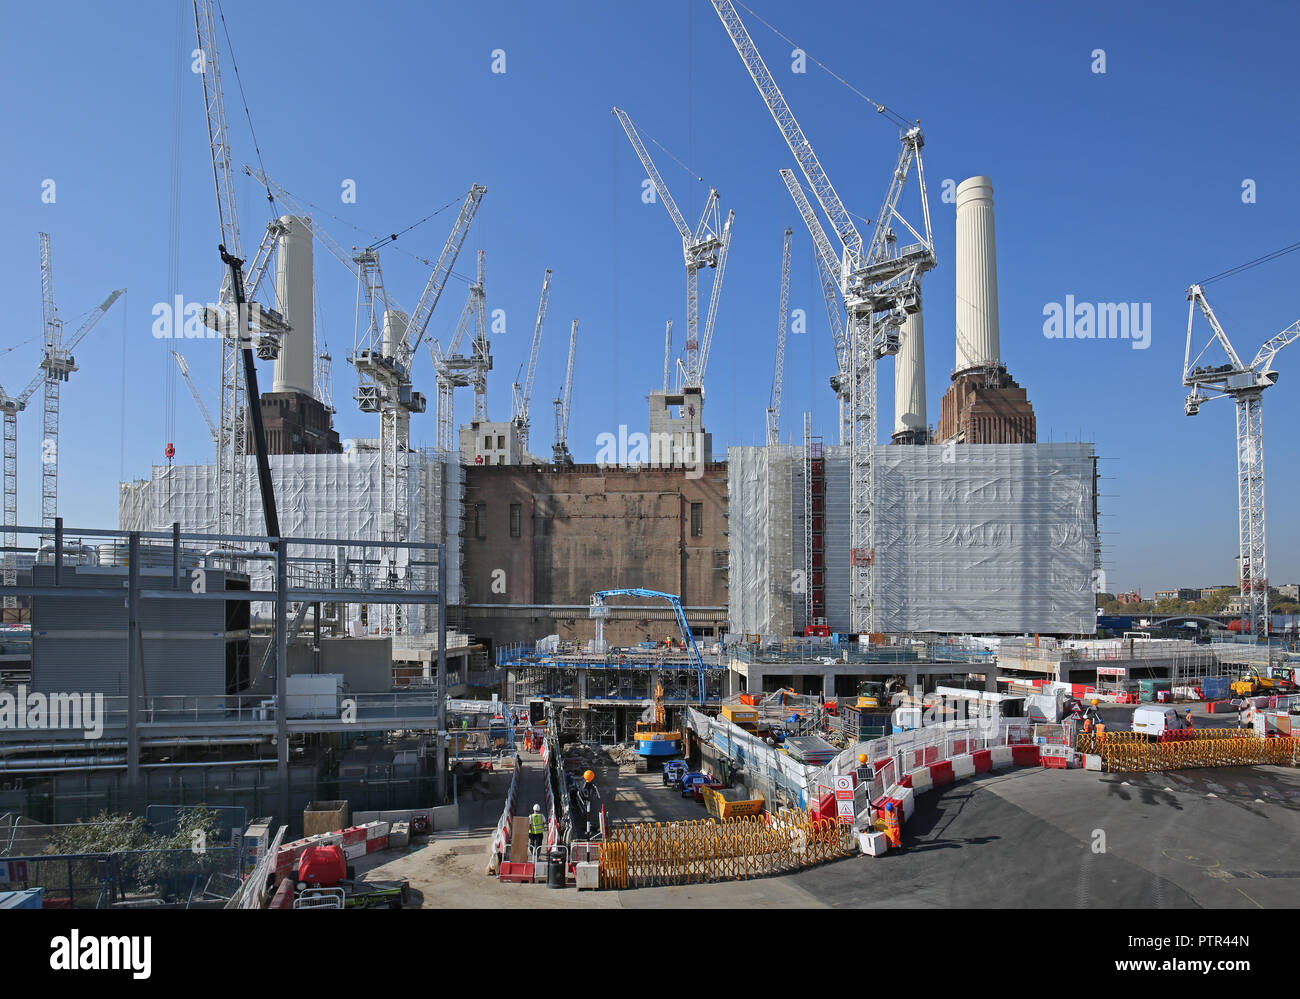 Turmdrehkrane surround Battersea Power Station in London, während der Umsatz von mehreren Milliarden Sanierung der 42 Hektar großen, Riverside. Stockfoto